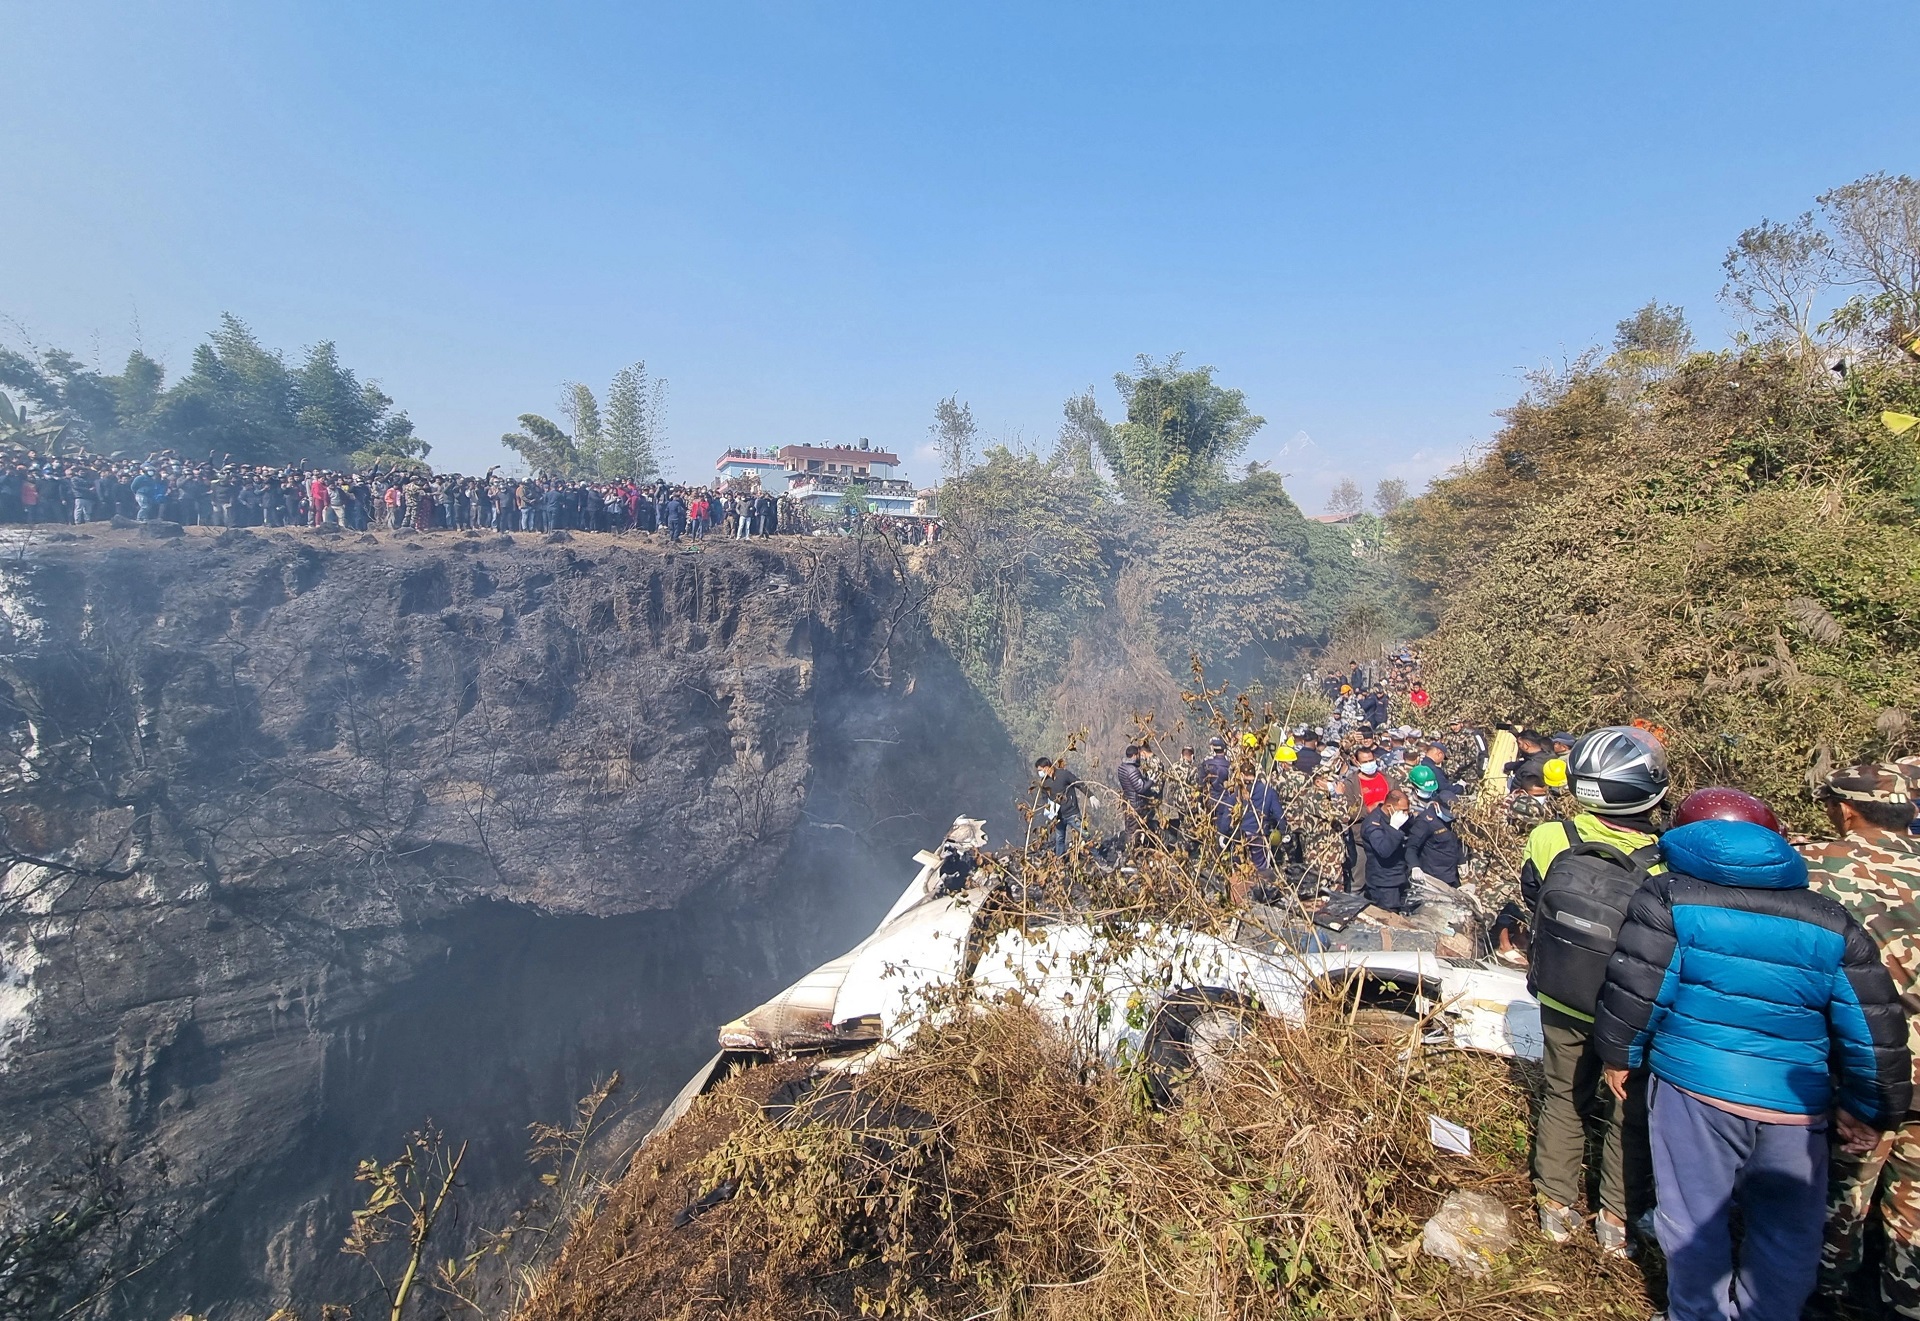 Hintli yolcu, Nepal’deki uçağın düşme anını anbean kayıt altına almış